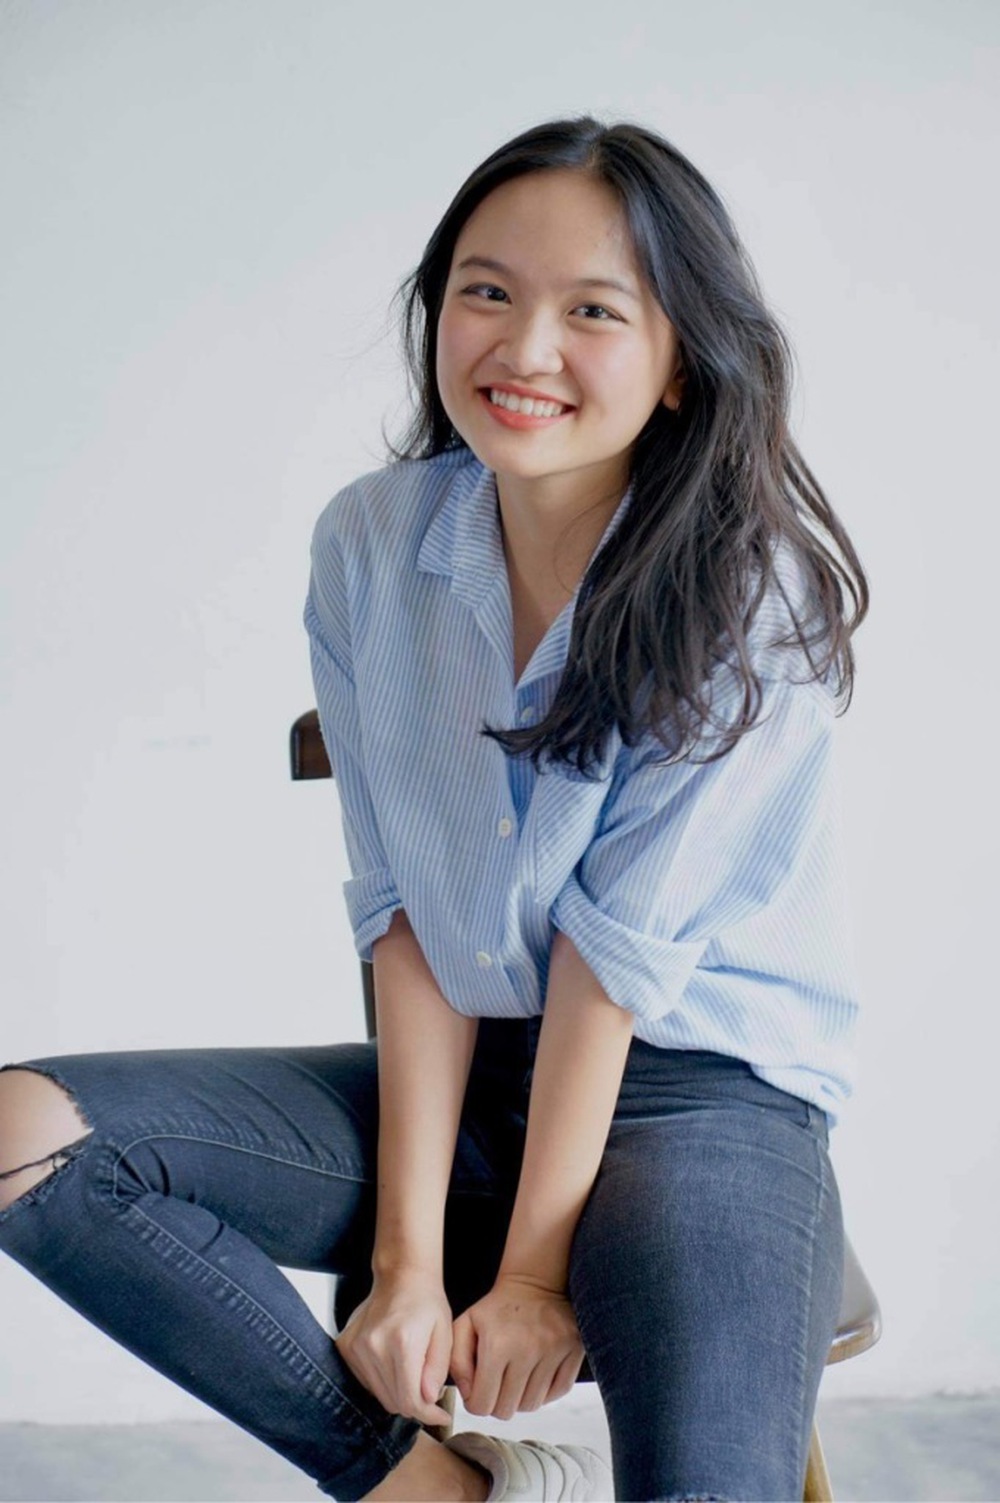 Nữ sinh Việt 17 tuổi giành học bổng 5 tỷ của ĐH hàng đầu thế giới: Yale là giấc mơ được viết bằng nỗ lực không ngừng của mình” - Ảnh 1.